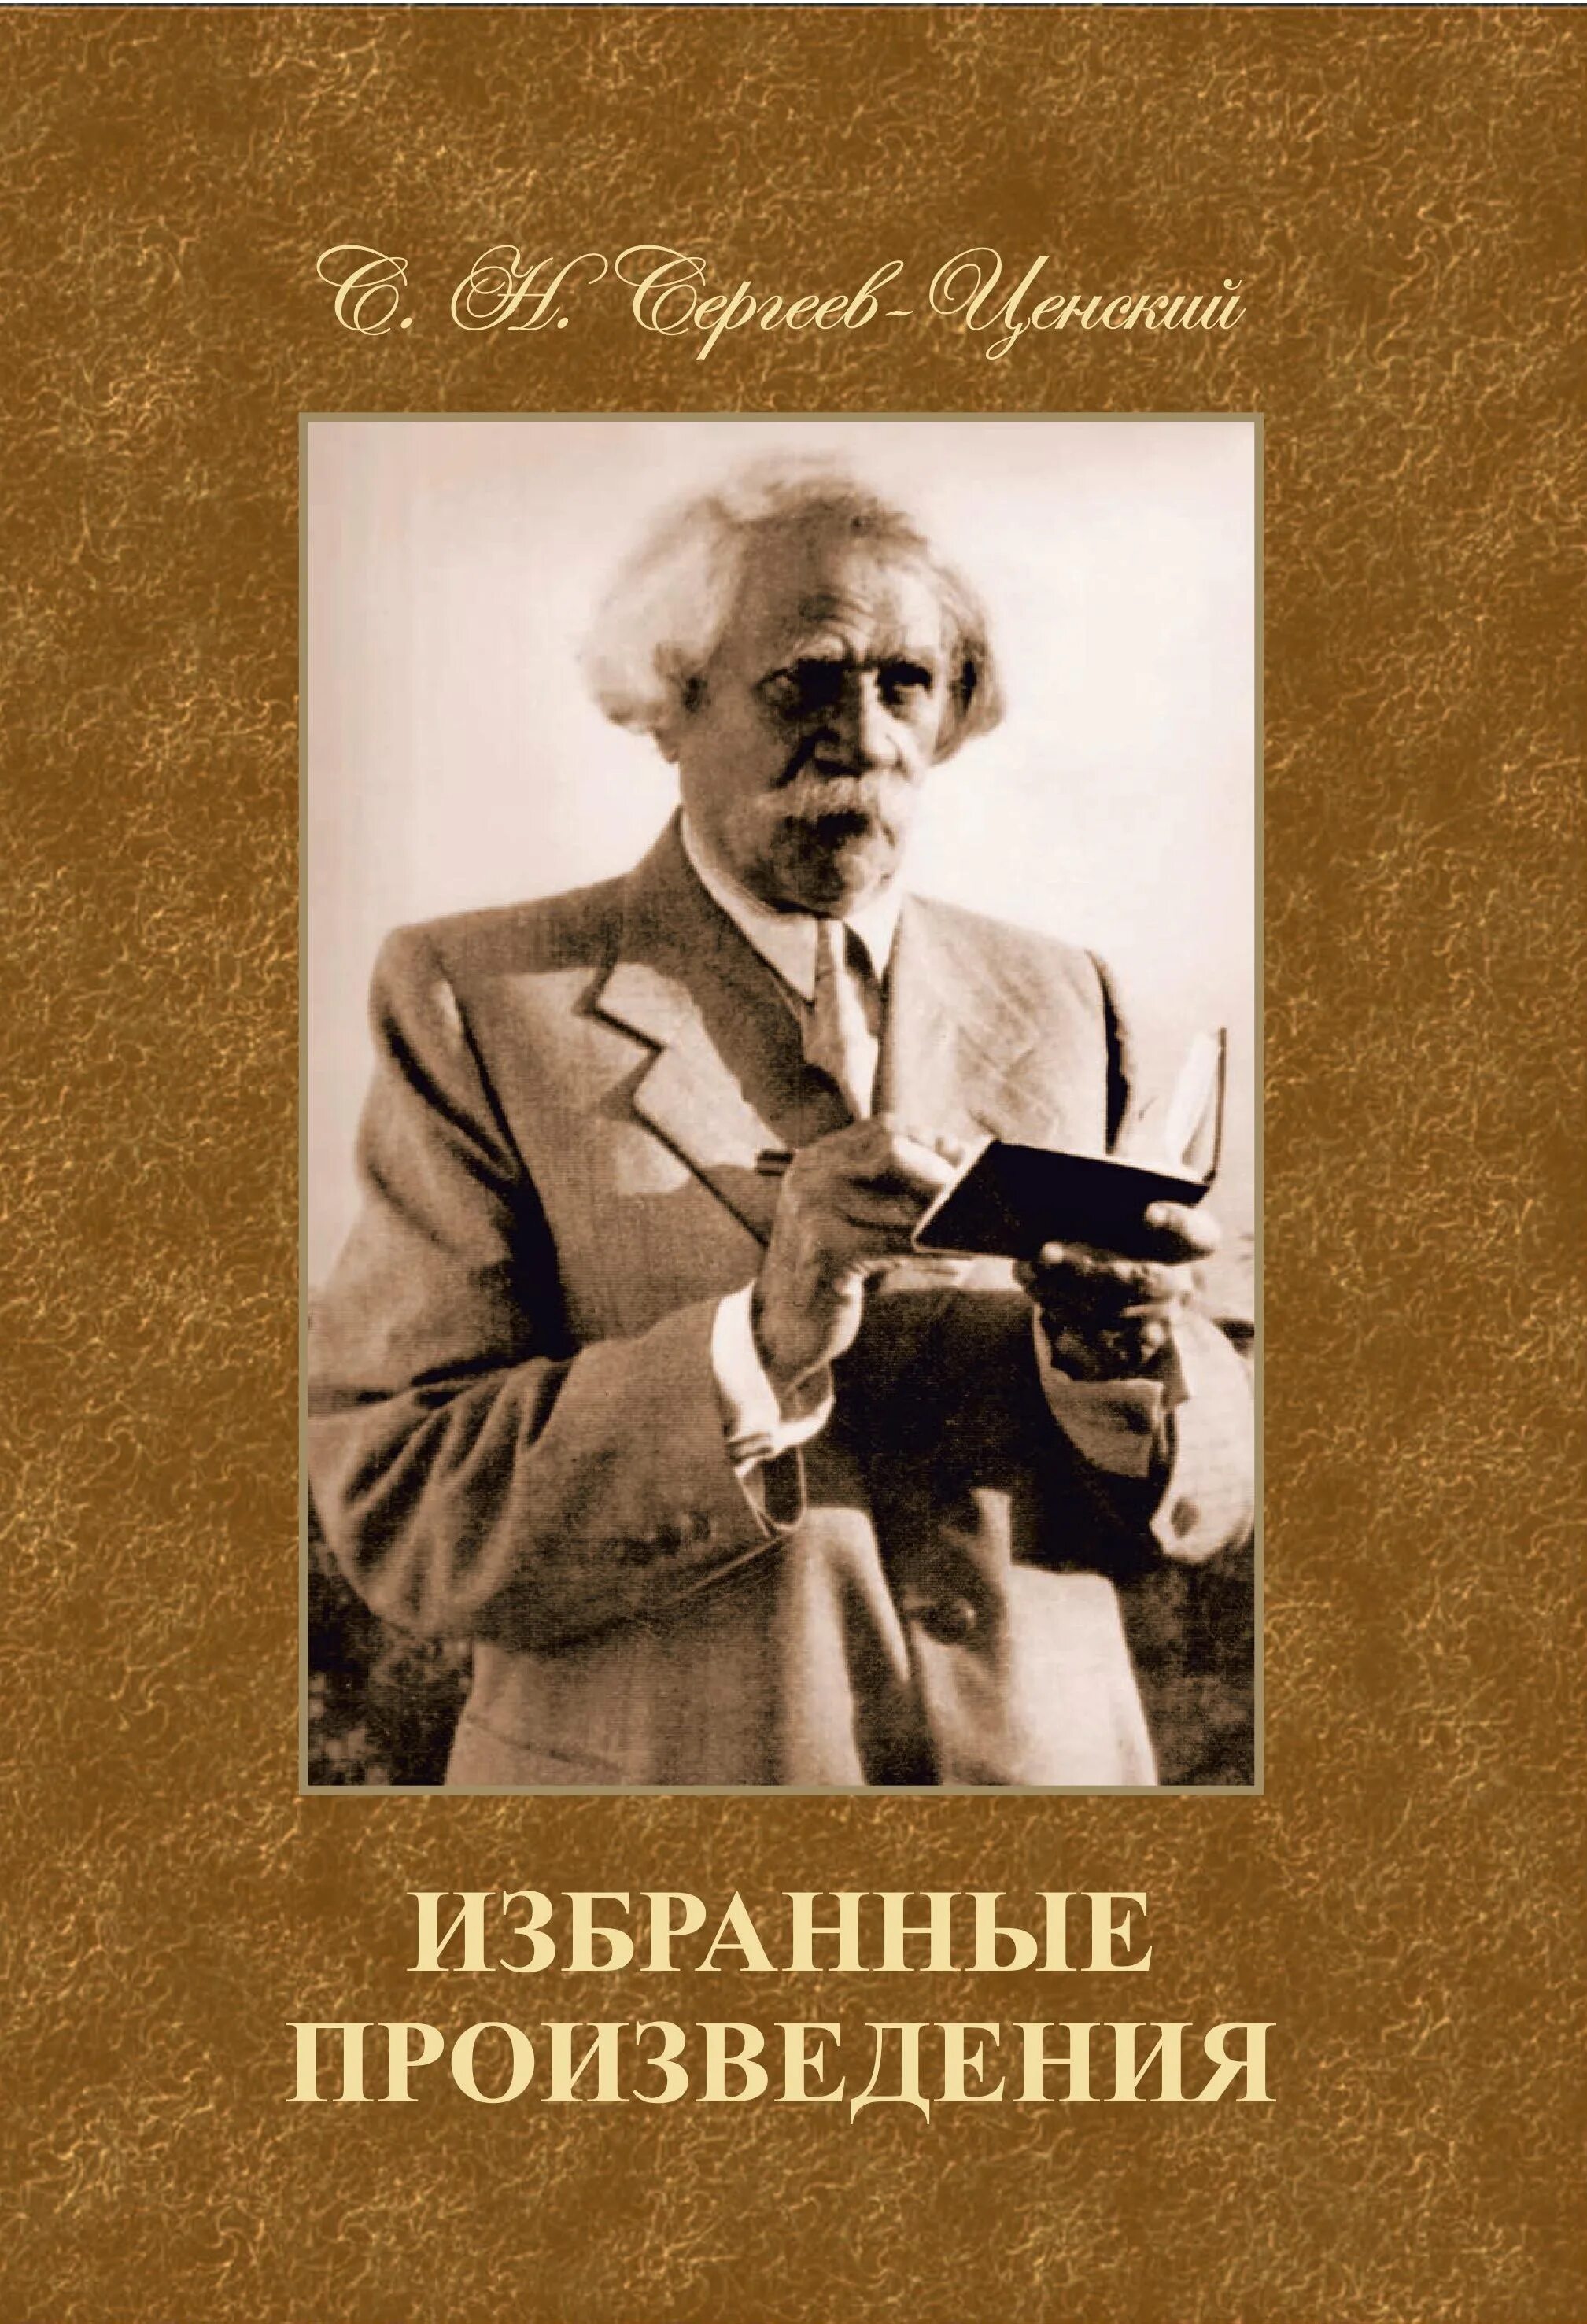 Сергеев все произведения. С.Н. Сергеев-Ценский (Сергеев) 1875–1958.